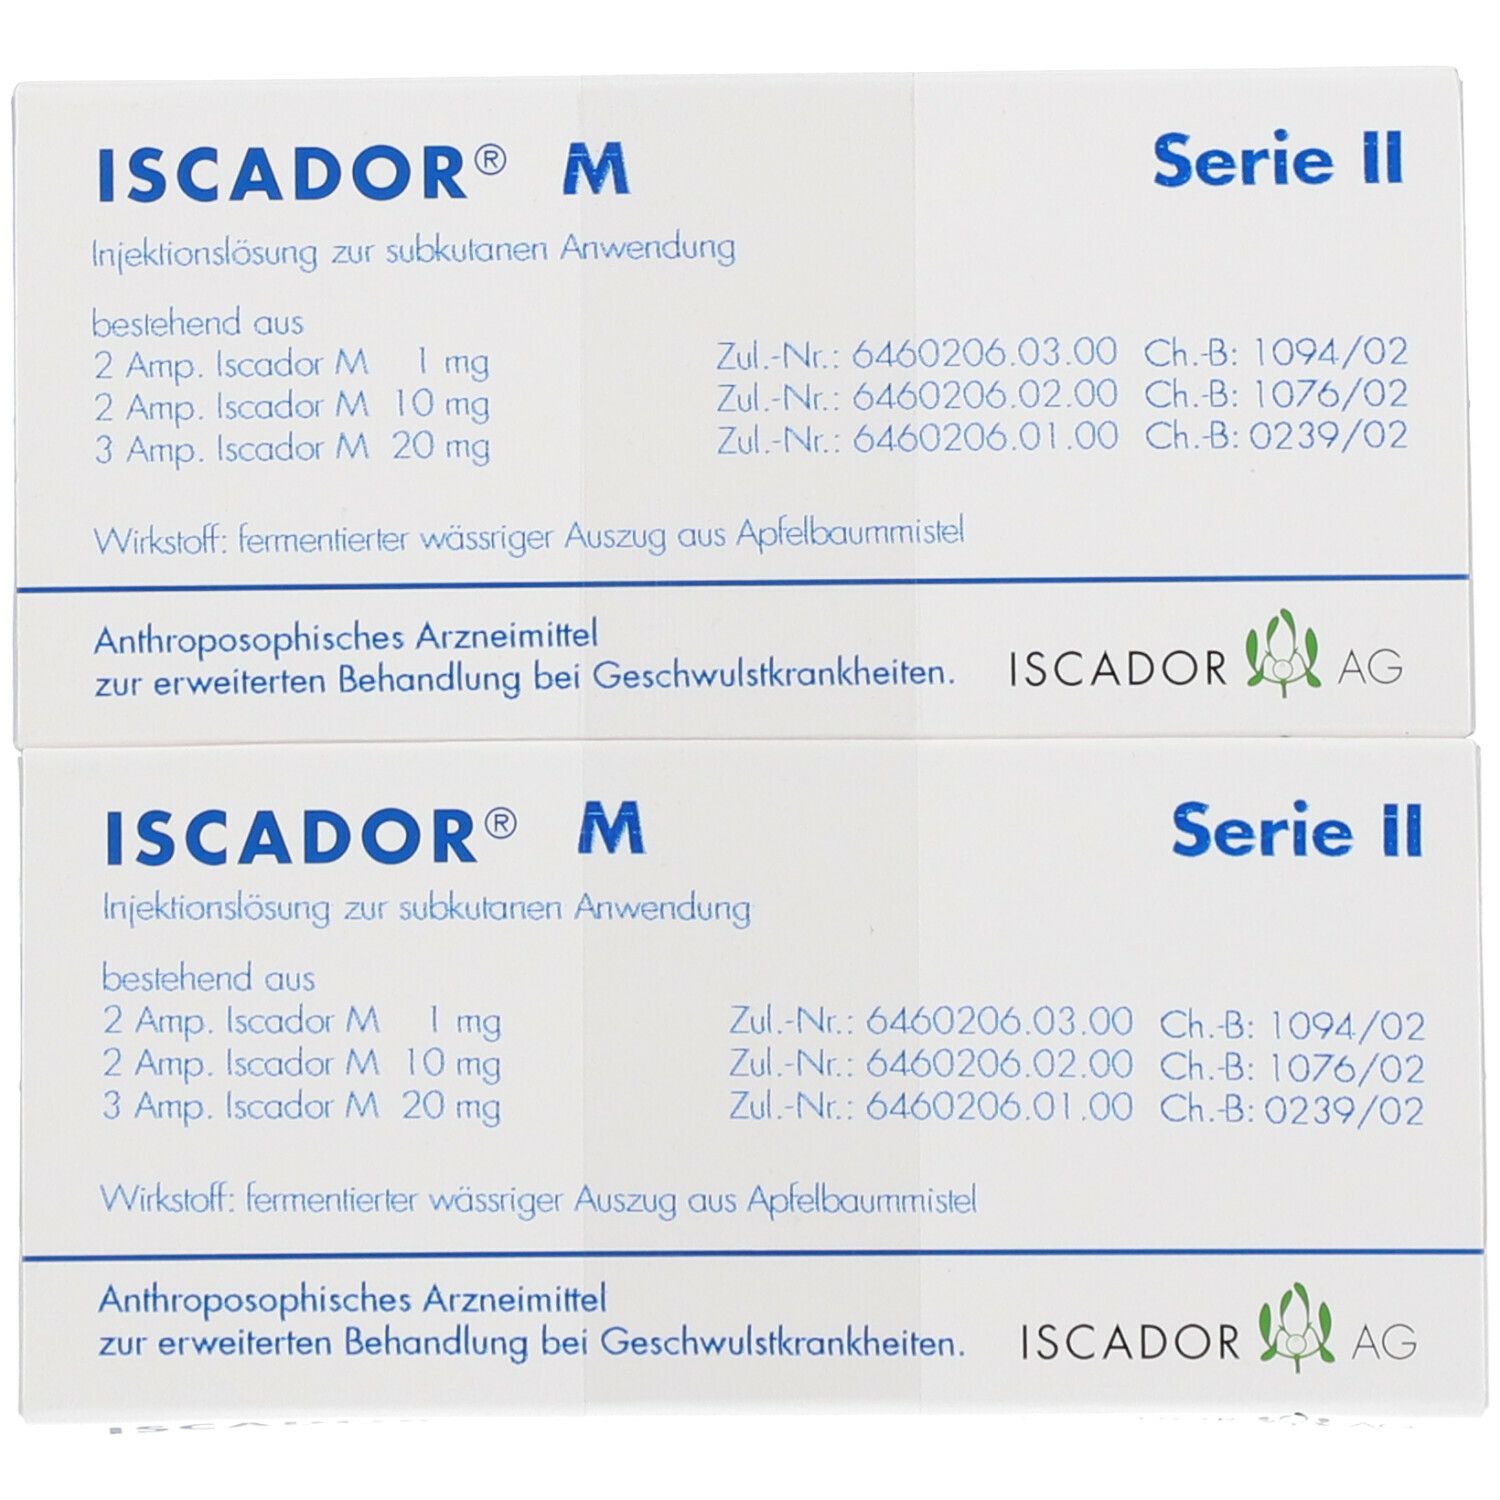 ISCADOR® M Serie II